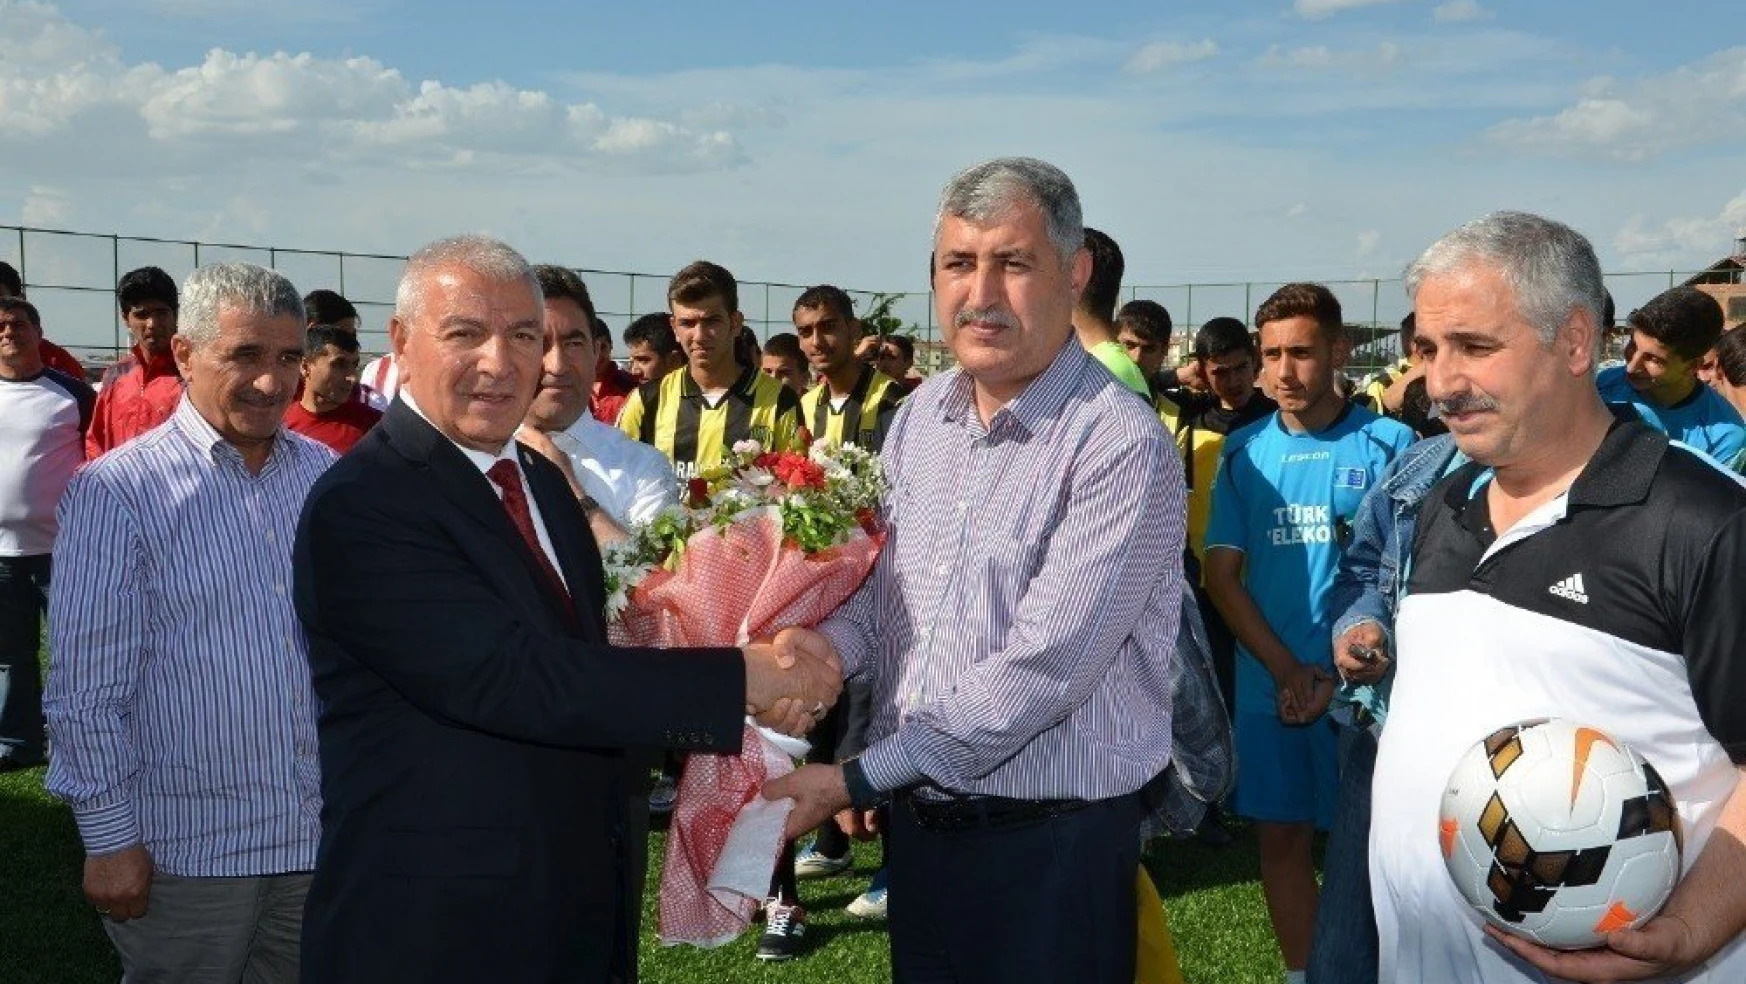 23.Yeşilyurt Kültür, Kiraz ve Spor Festivali futbol müsabakalarının fikstür çekildi
